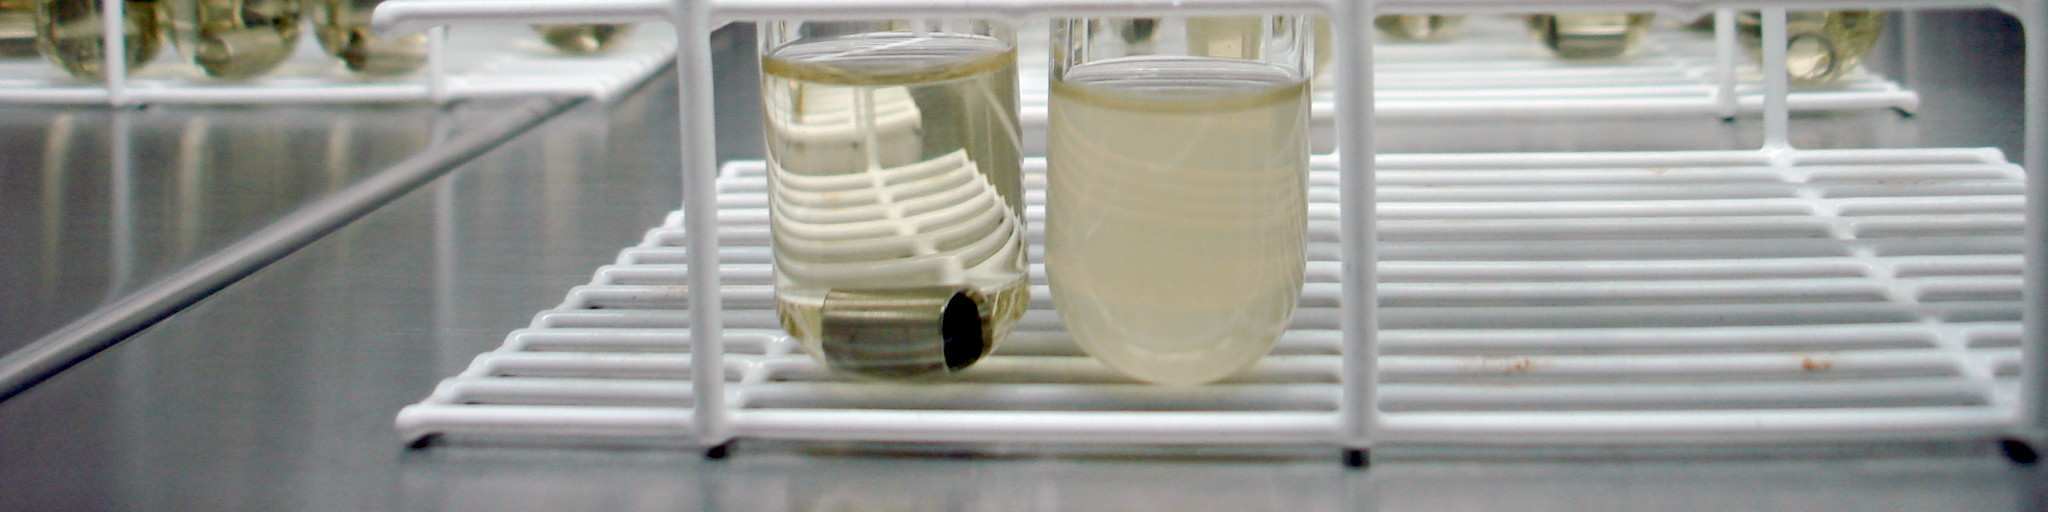 bactérias no tubo contendo fenol (tubo